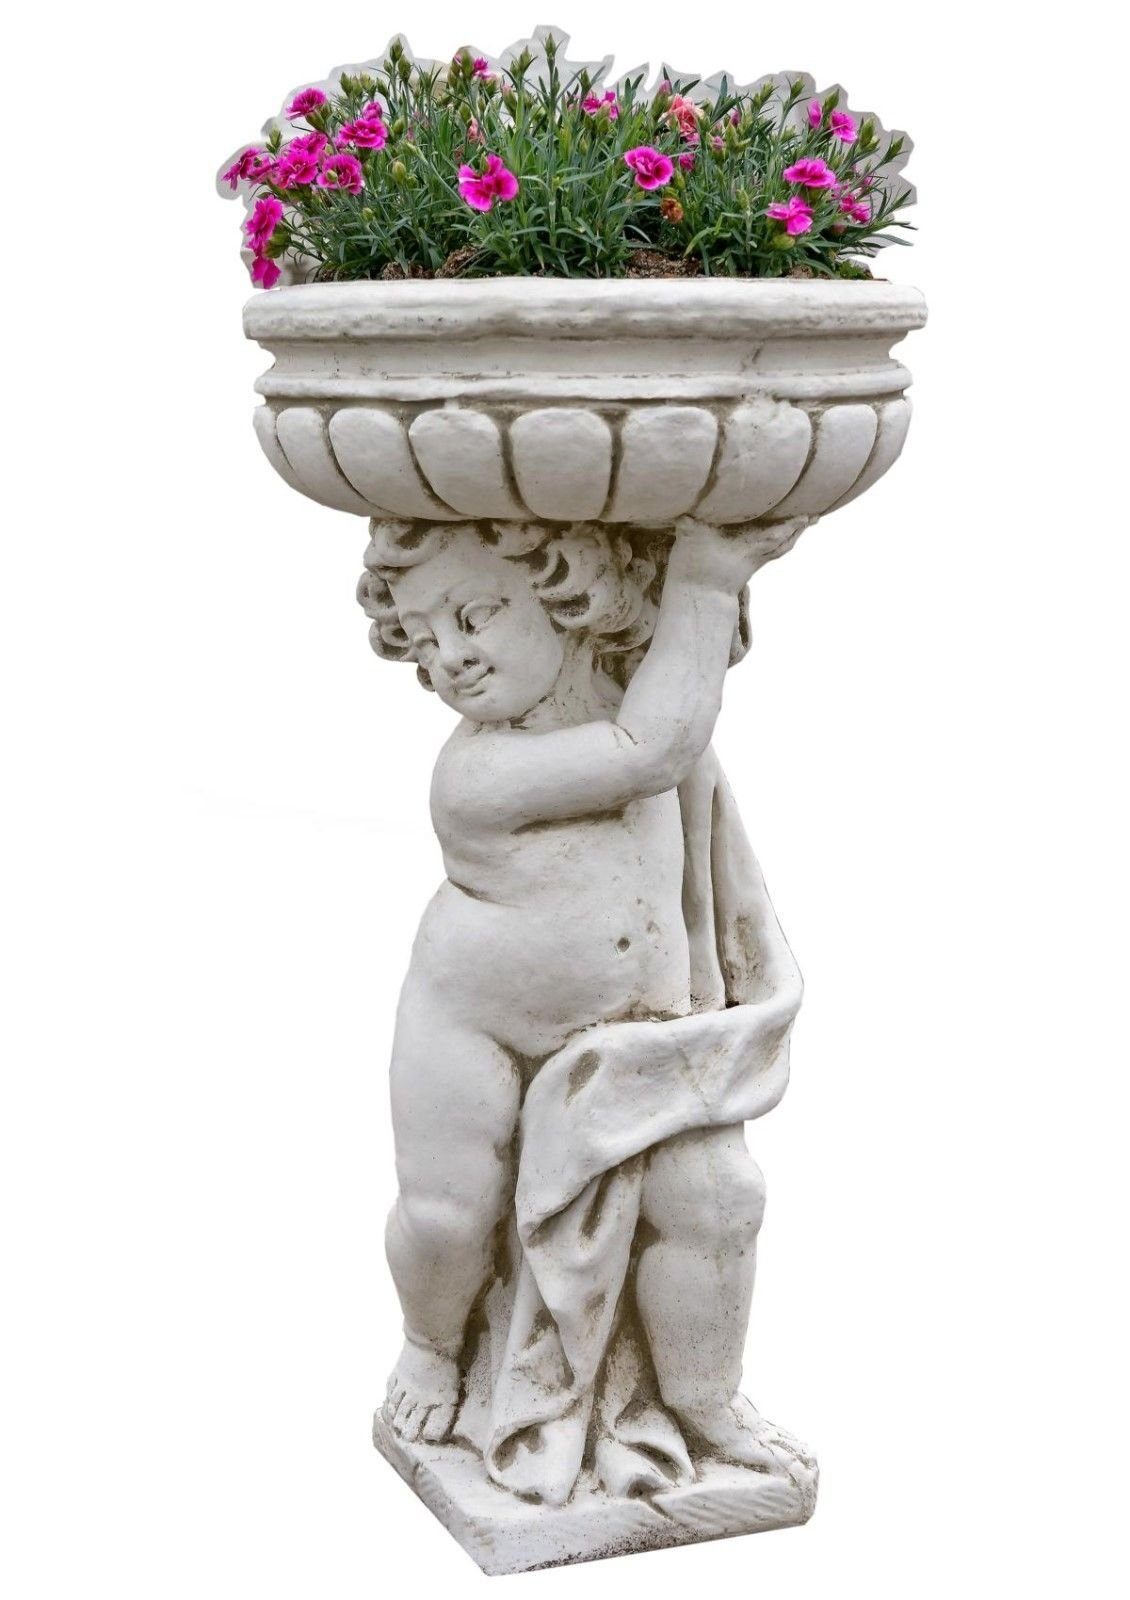 Antikes Wohndesign Pflanzschale Gartenfigur Steinfigur Pflanzschale Pflanzkübel Steinkübel Terrassenmö